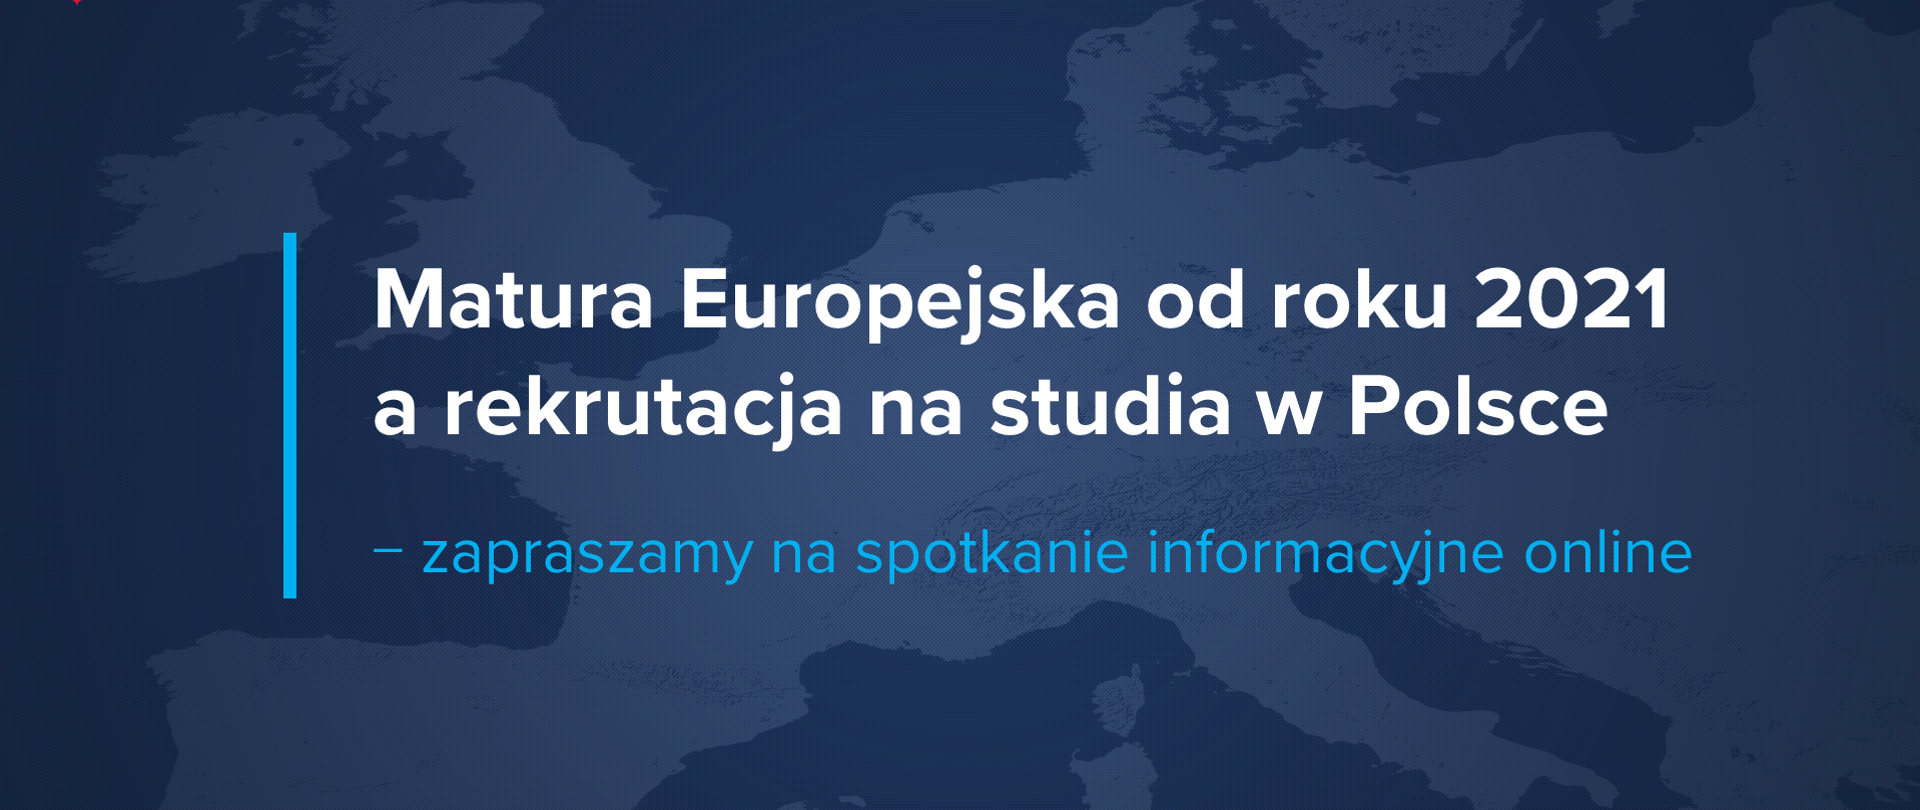 Grafika z tekstem: Matura Europejska od roku 2021 a rekrutacja na studia w Polsce – zapraszamy na spotkanie informacyjne